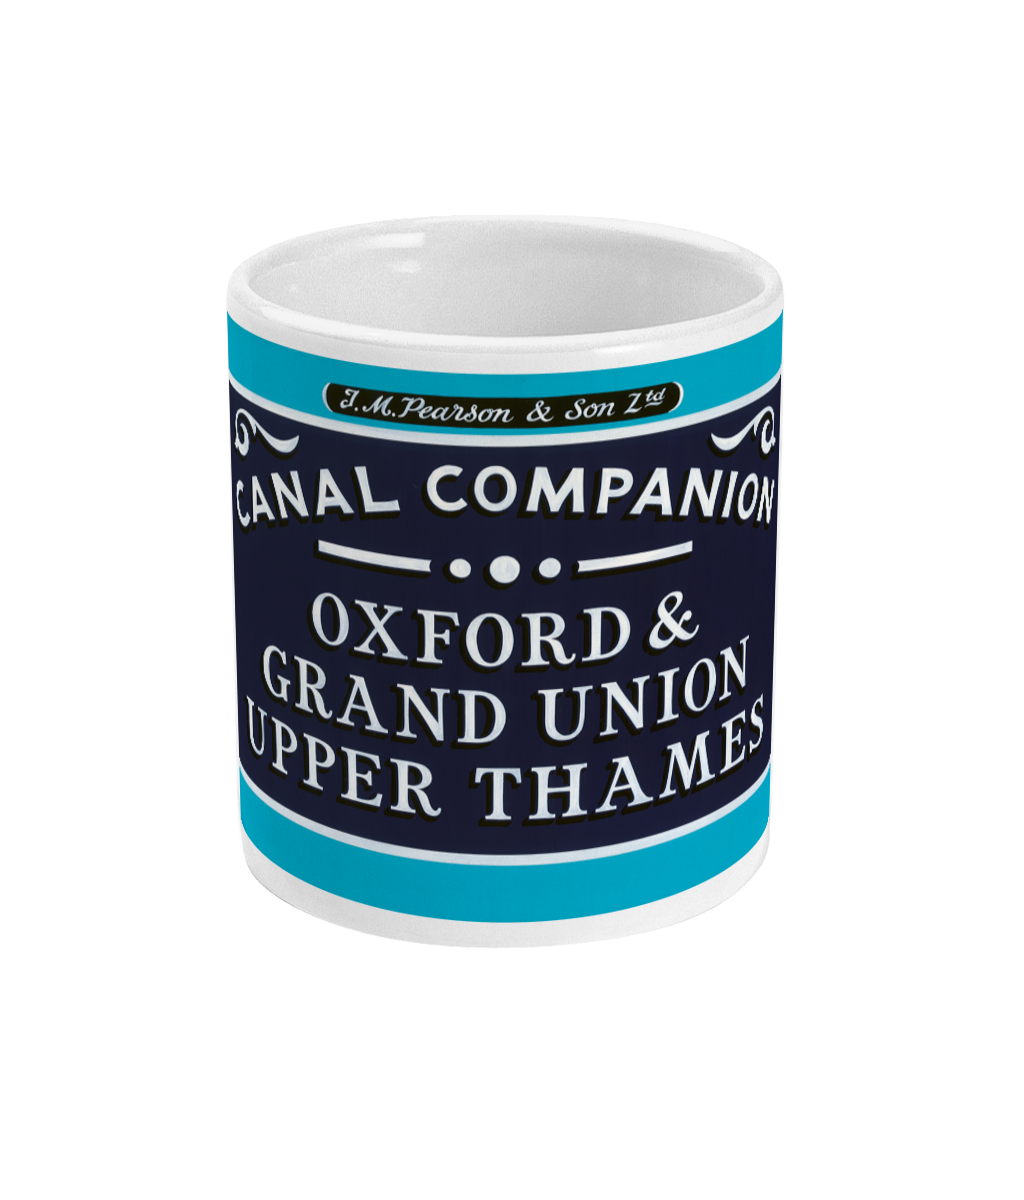 Pearson Canal Companion Ceramic Mug - Oxford & Grand Union Canals